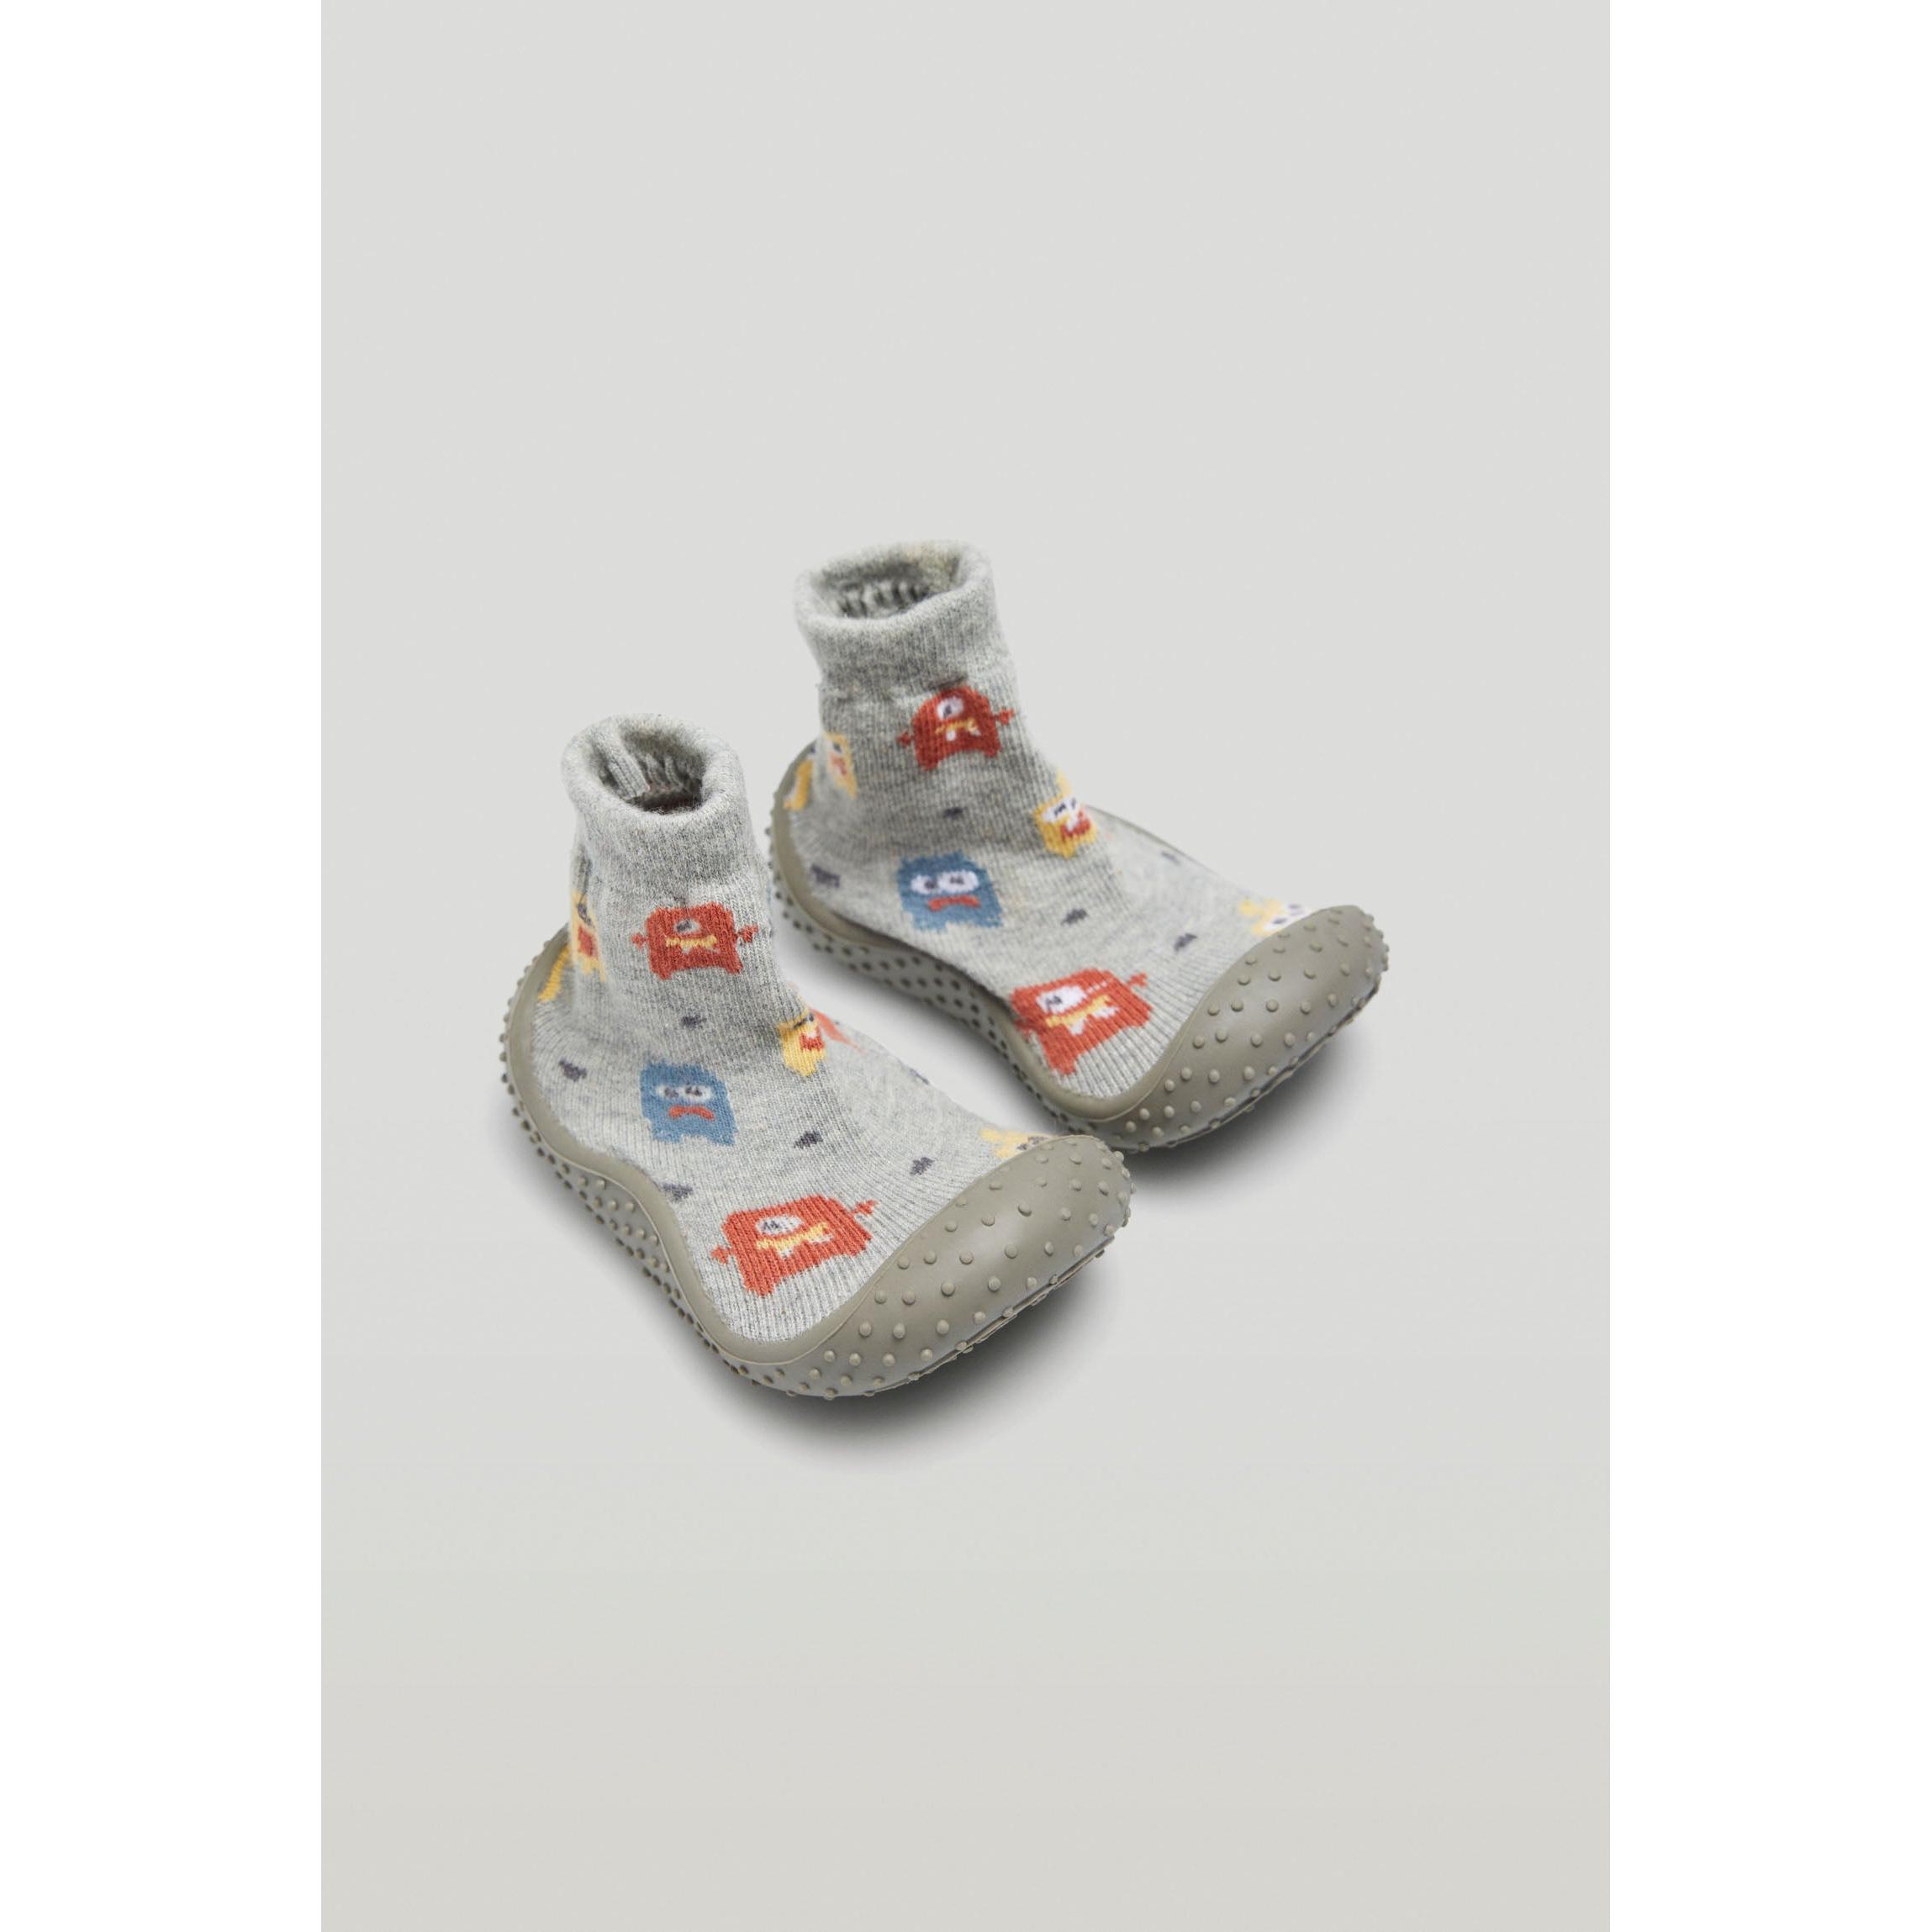 Ysabel Mora - Ysabel Mora - Zapatilla calcetín bebé primeros pasos